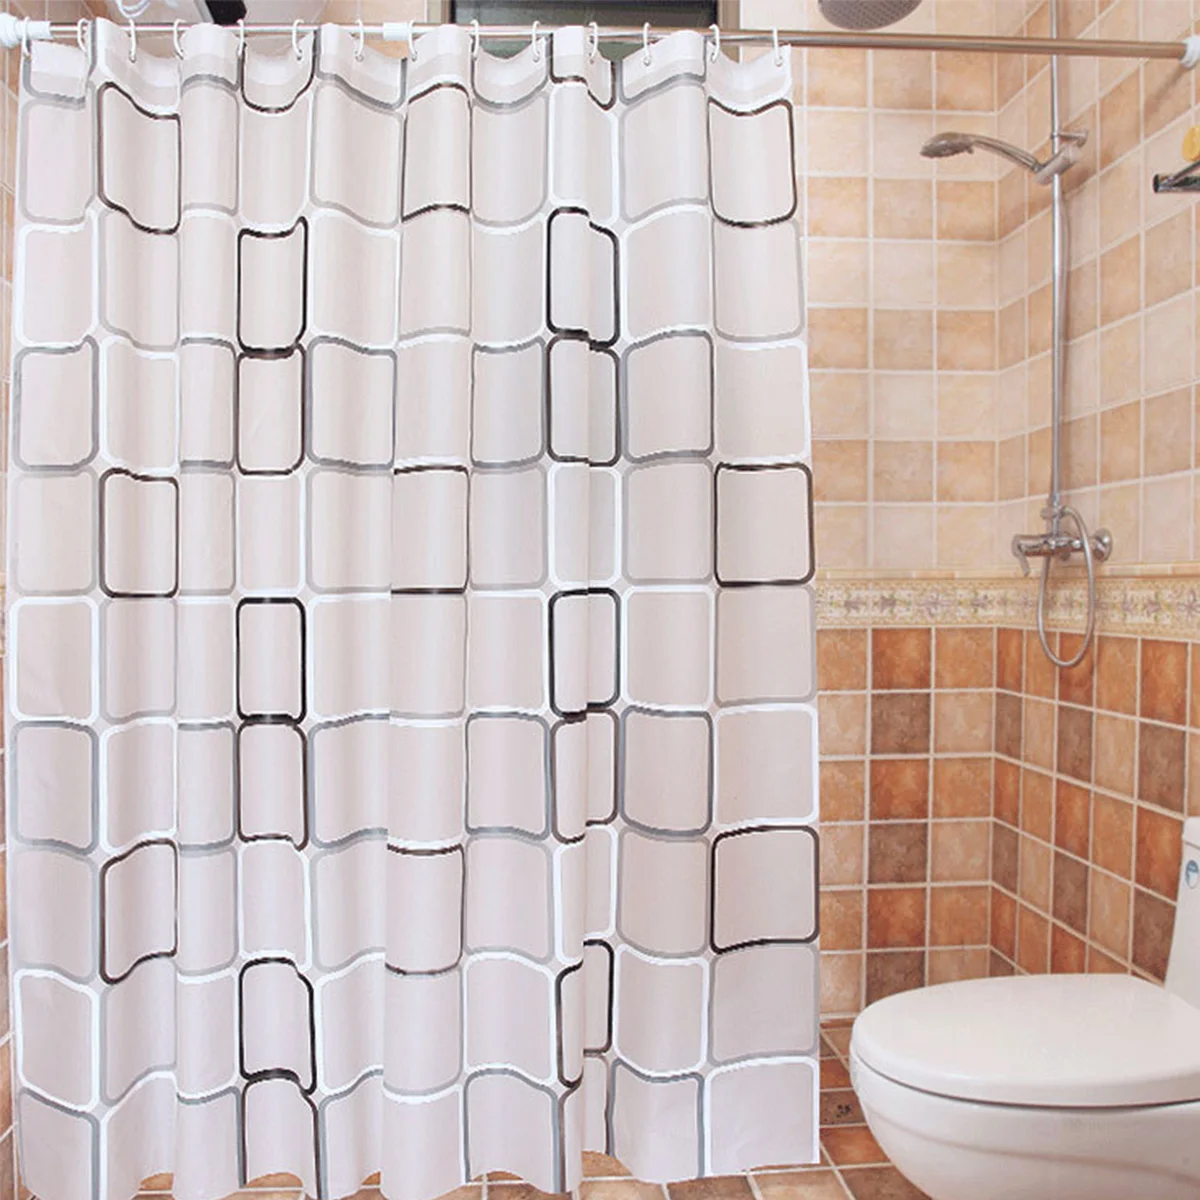 Водонепроницаемый PEVA занавеска для душа лайнер прозрачный плесени занавеска для ванной комнаты занавеска для душа с 12 крючками высокого качества